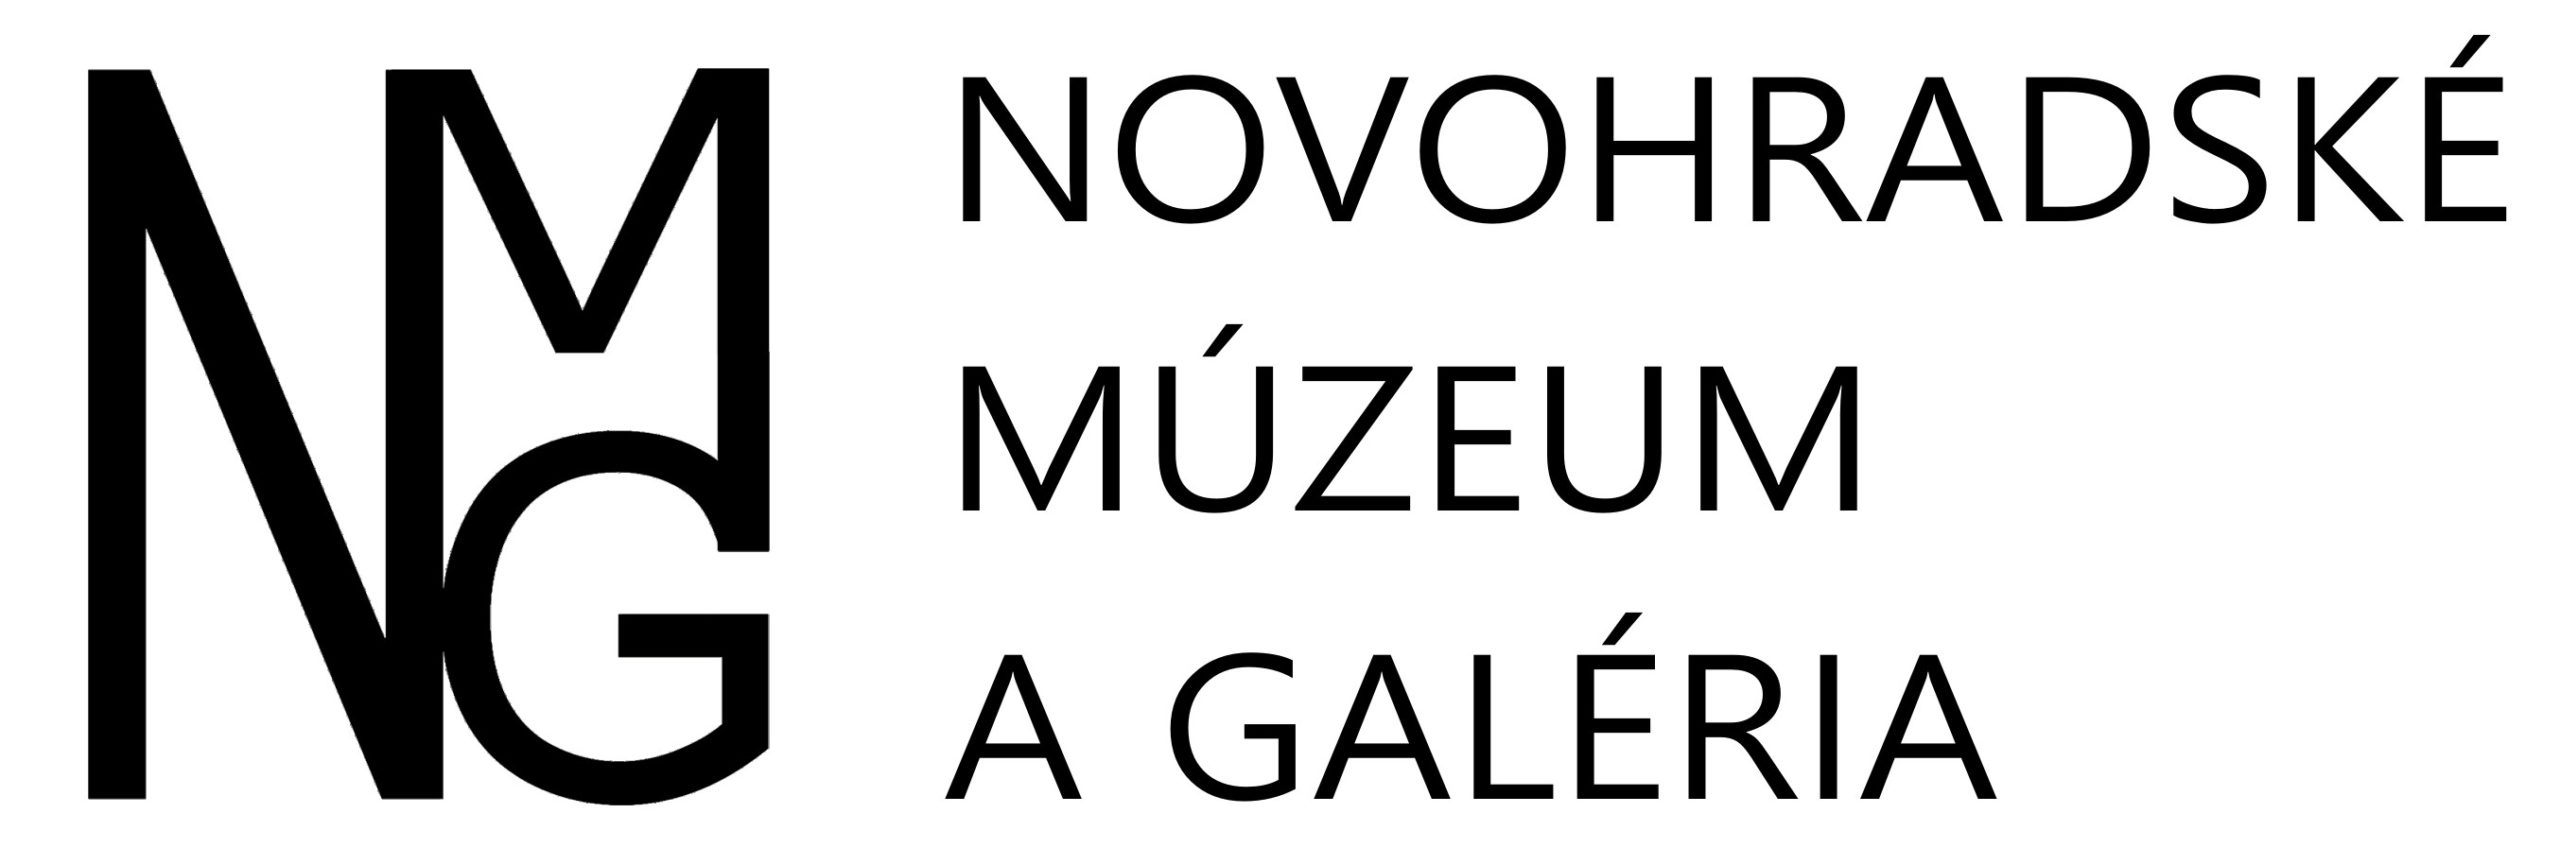 Novohradské múzeum a galéria Lučenec